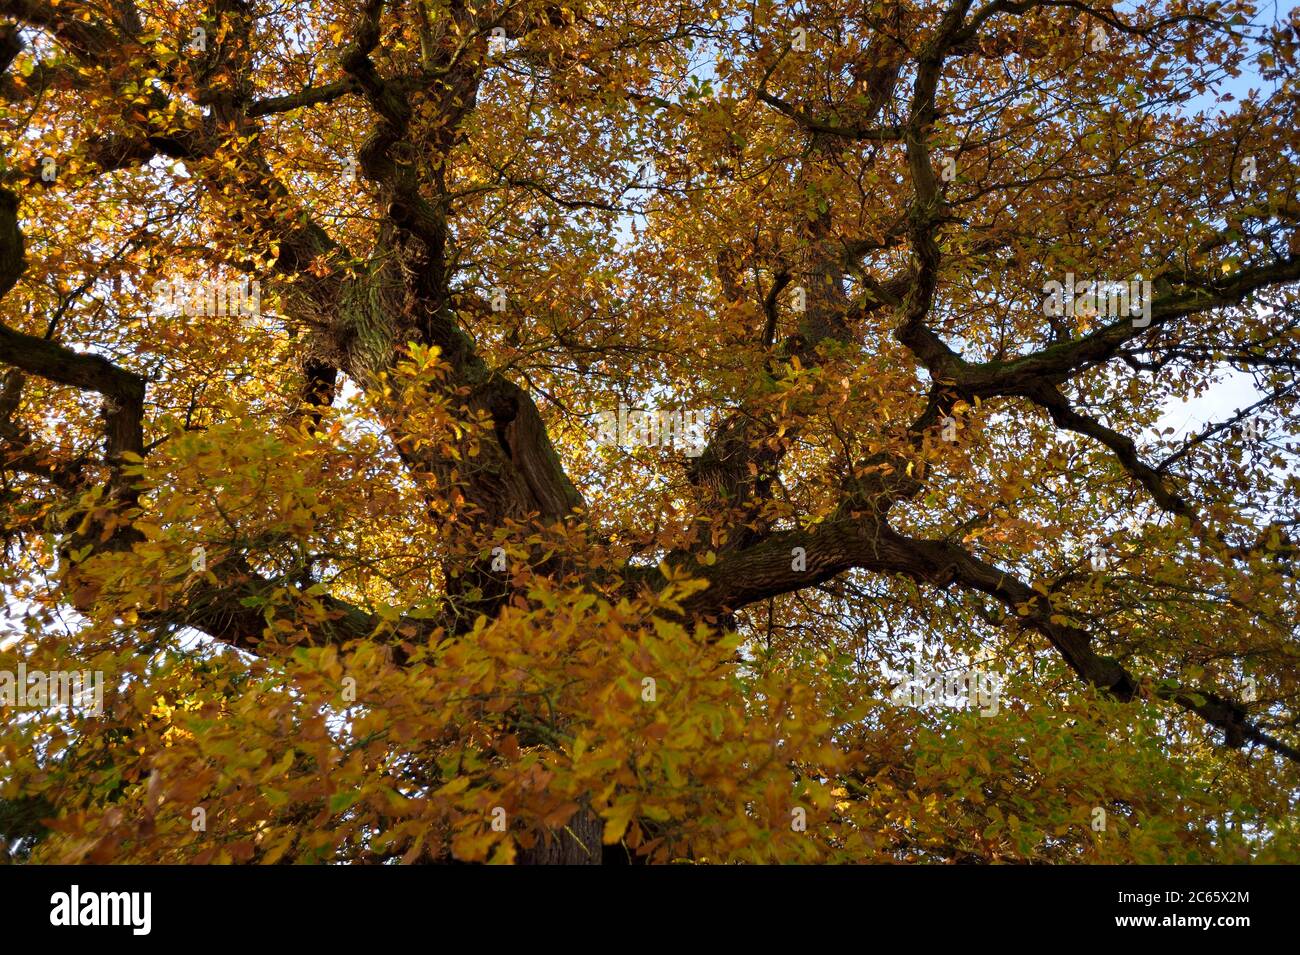 Englische Eiche (Quercus robur) Baumkrone in Herbstfarben. Einzelne Eiche. Kellerwald, Hessen, Deutschland Stockfoto